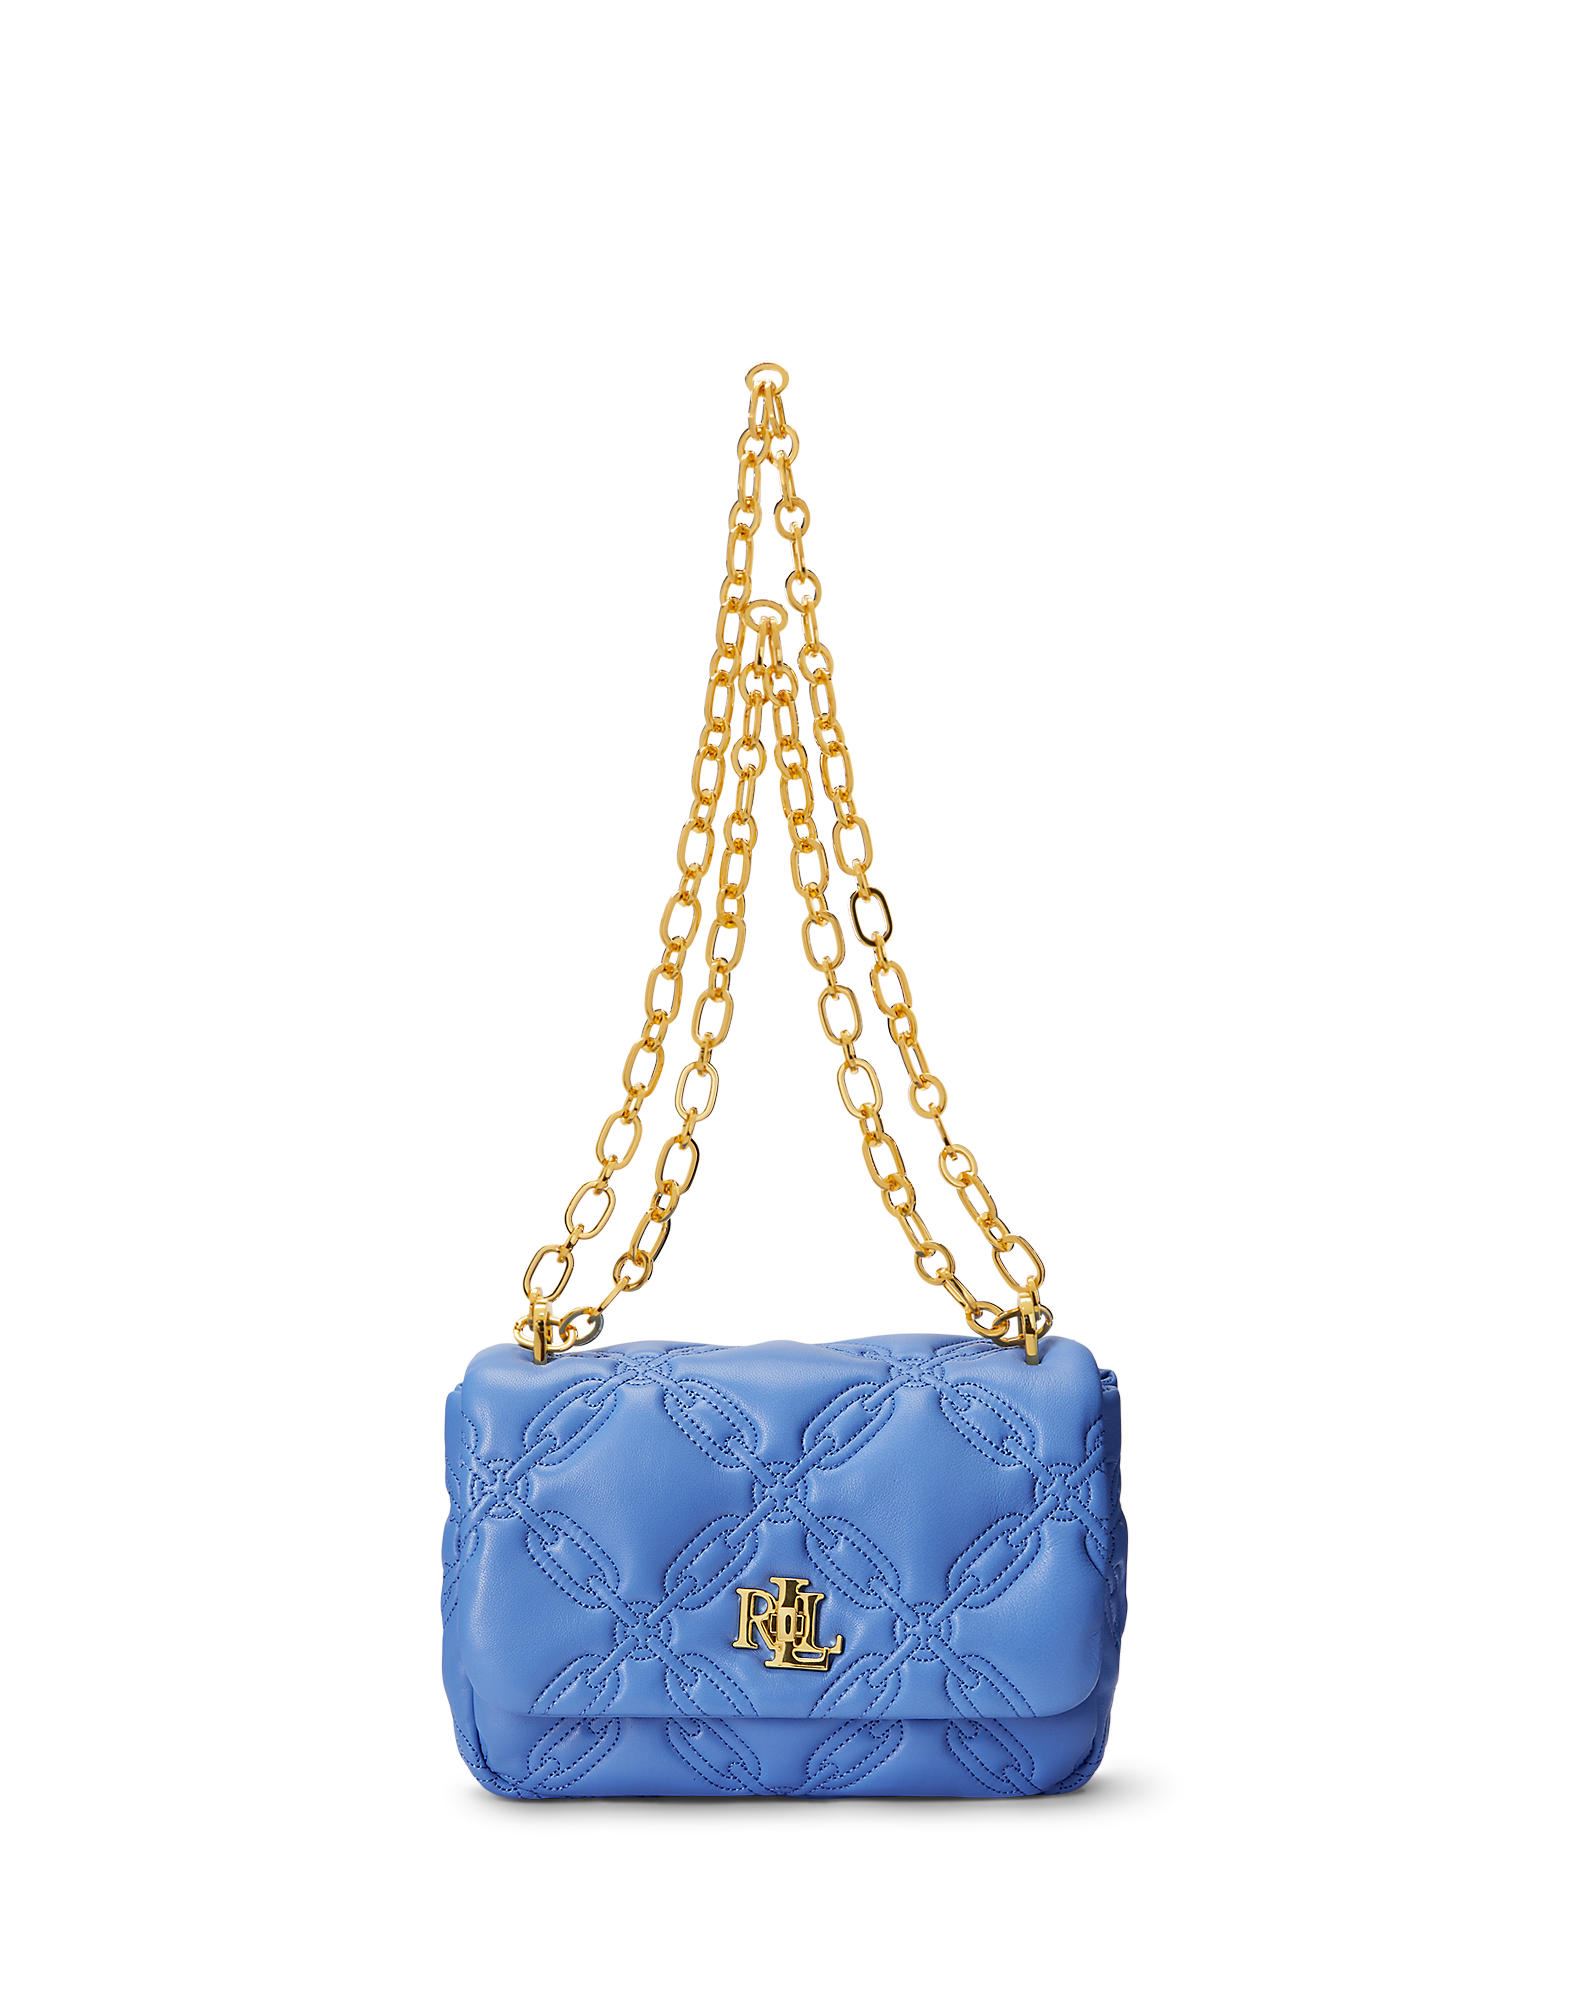 Lauren Ralph Lauren Handbags In Pastel Blue